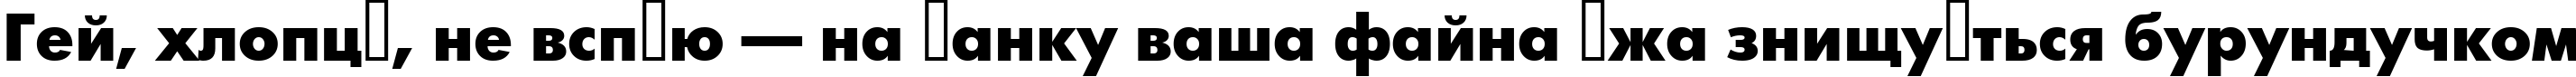 Пример написания шрифтом a_FuturicaBlack текста на украинском